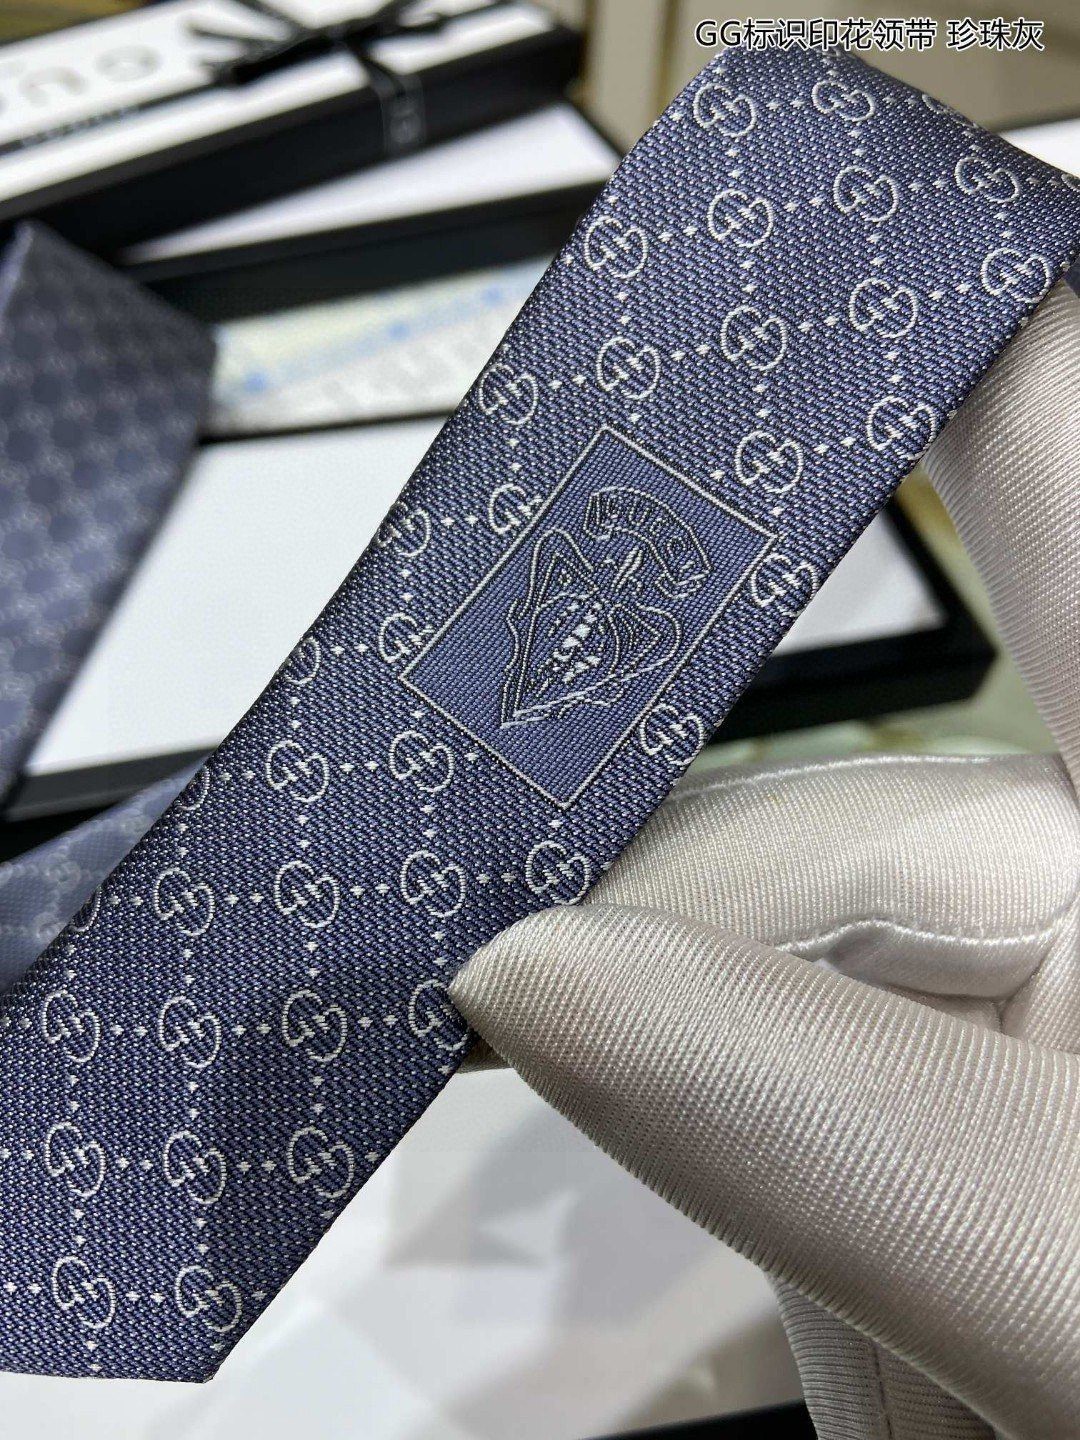 G家专柜新款GG老花图案领带男士领带